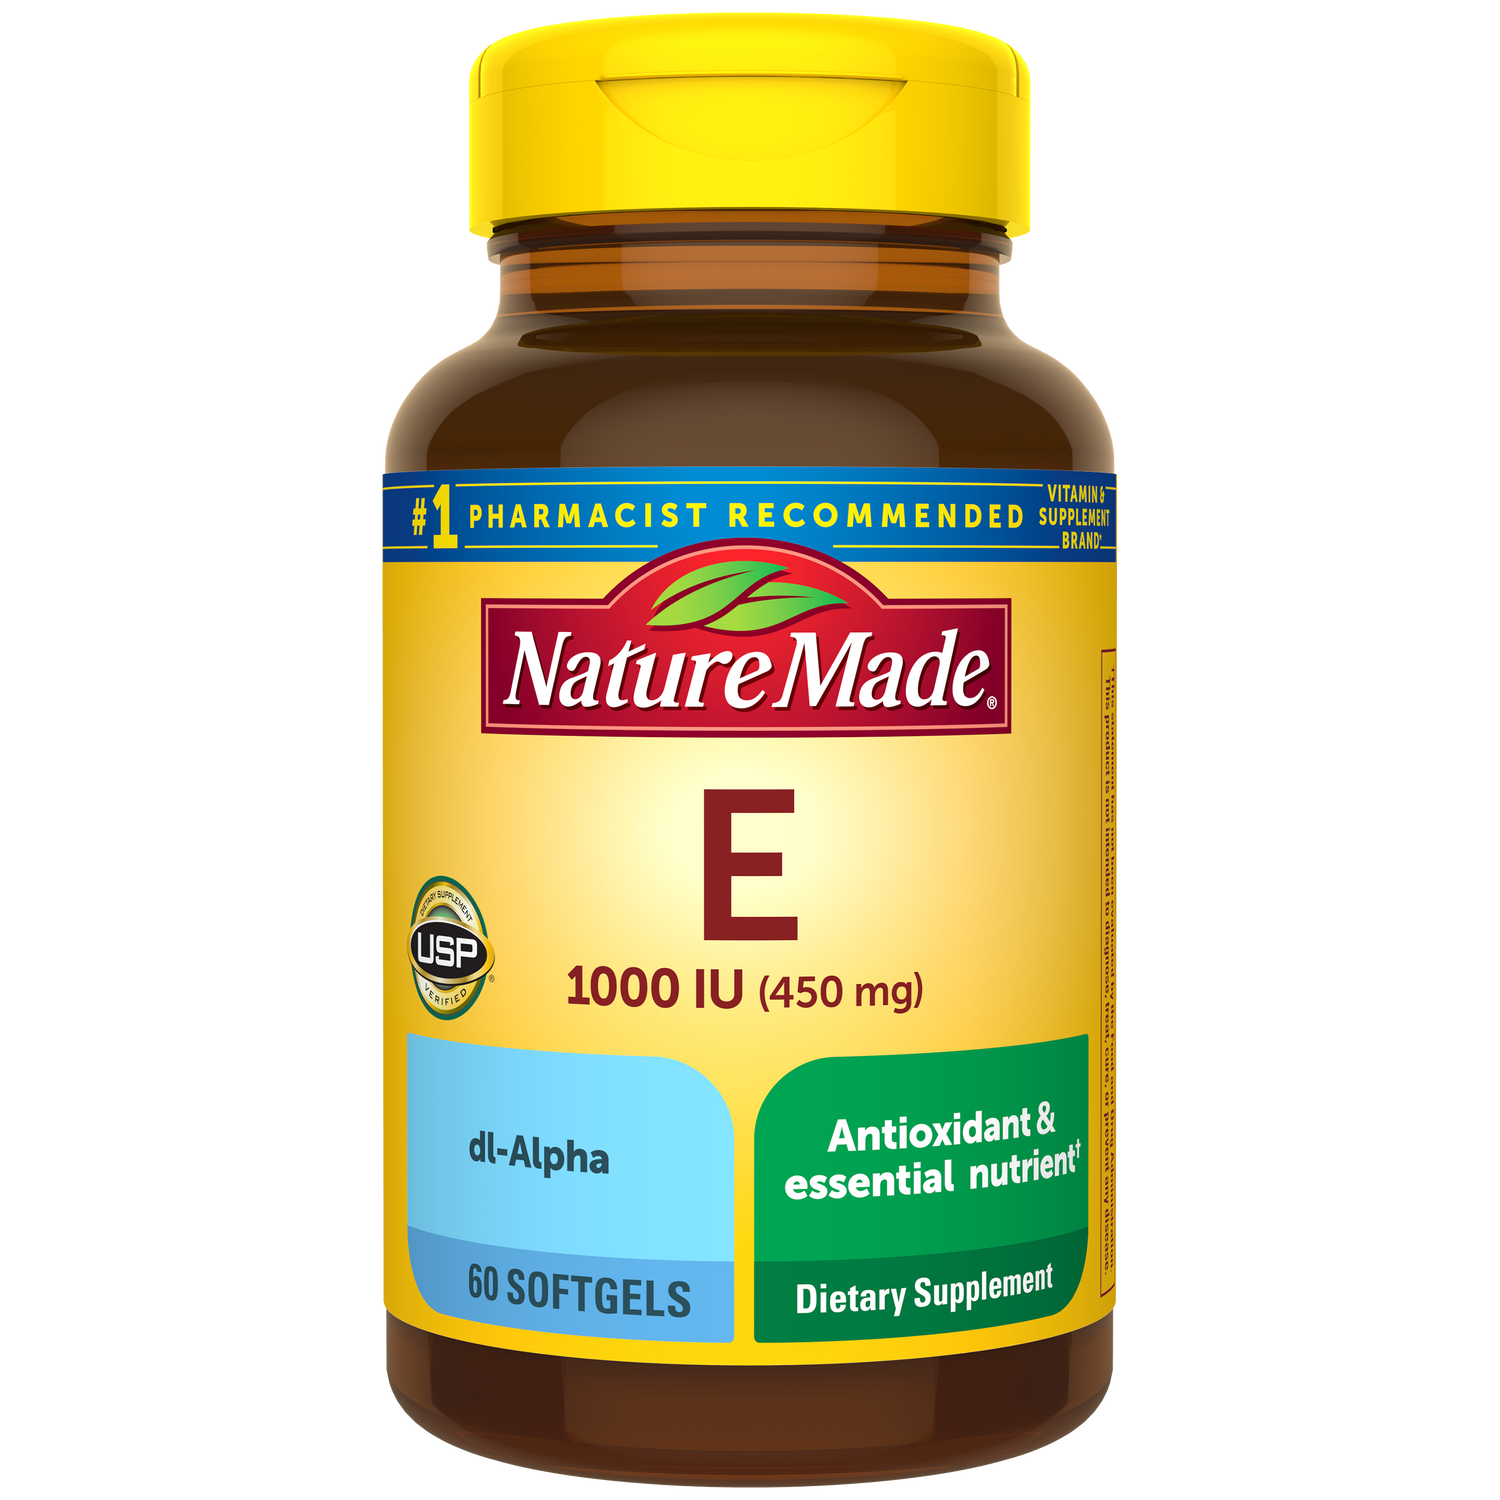 Vitamin E 1000 IU (450 mg) dl-Alpha Softgels | 